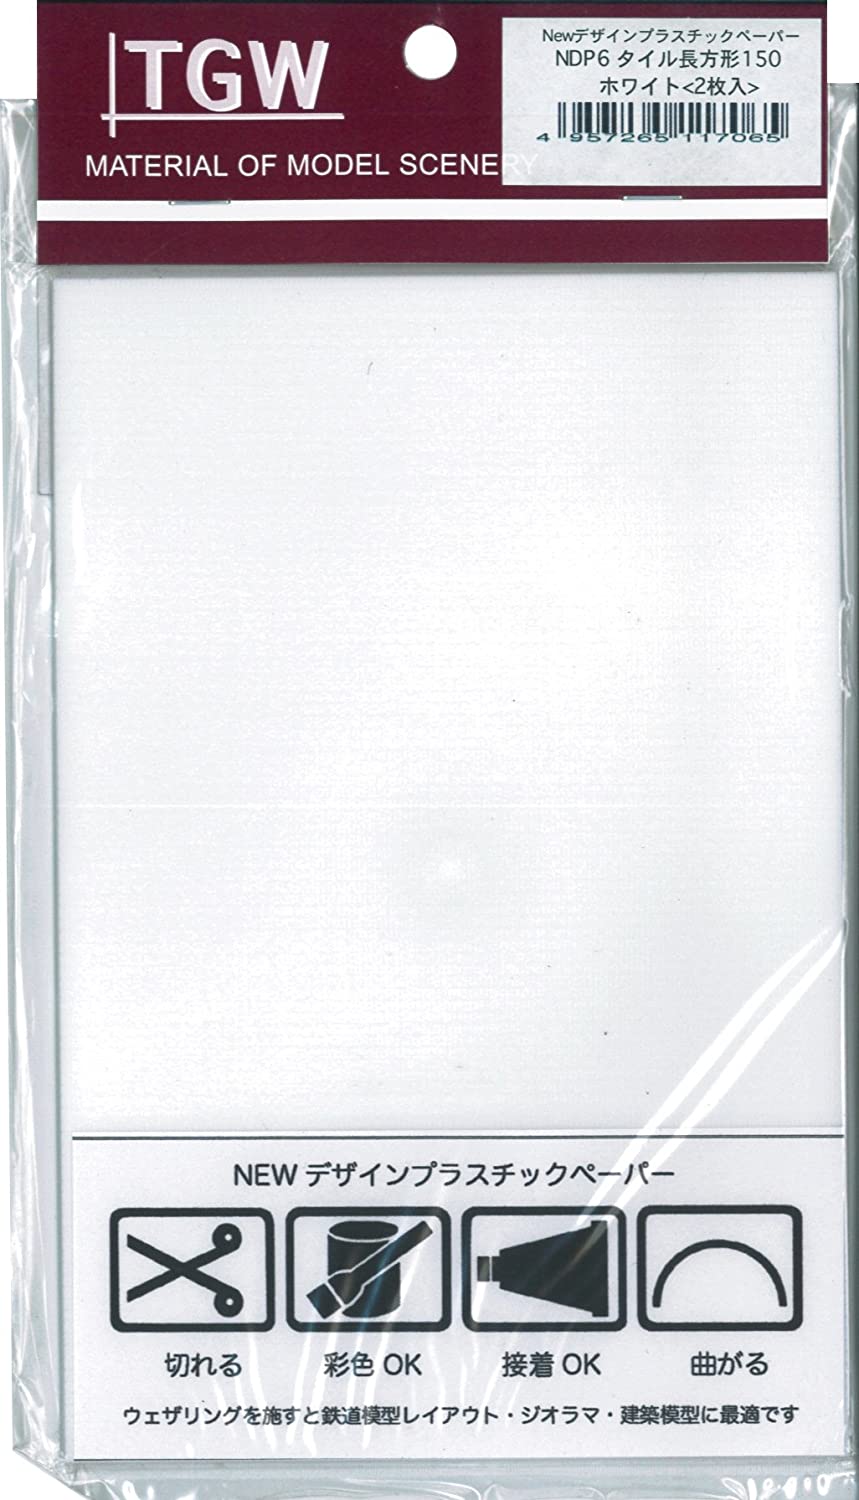 NDP-6 New Plastic Design Paper - Rectangular Tile 150 (White/2 S